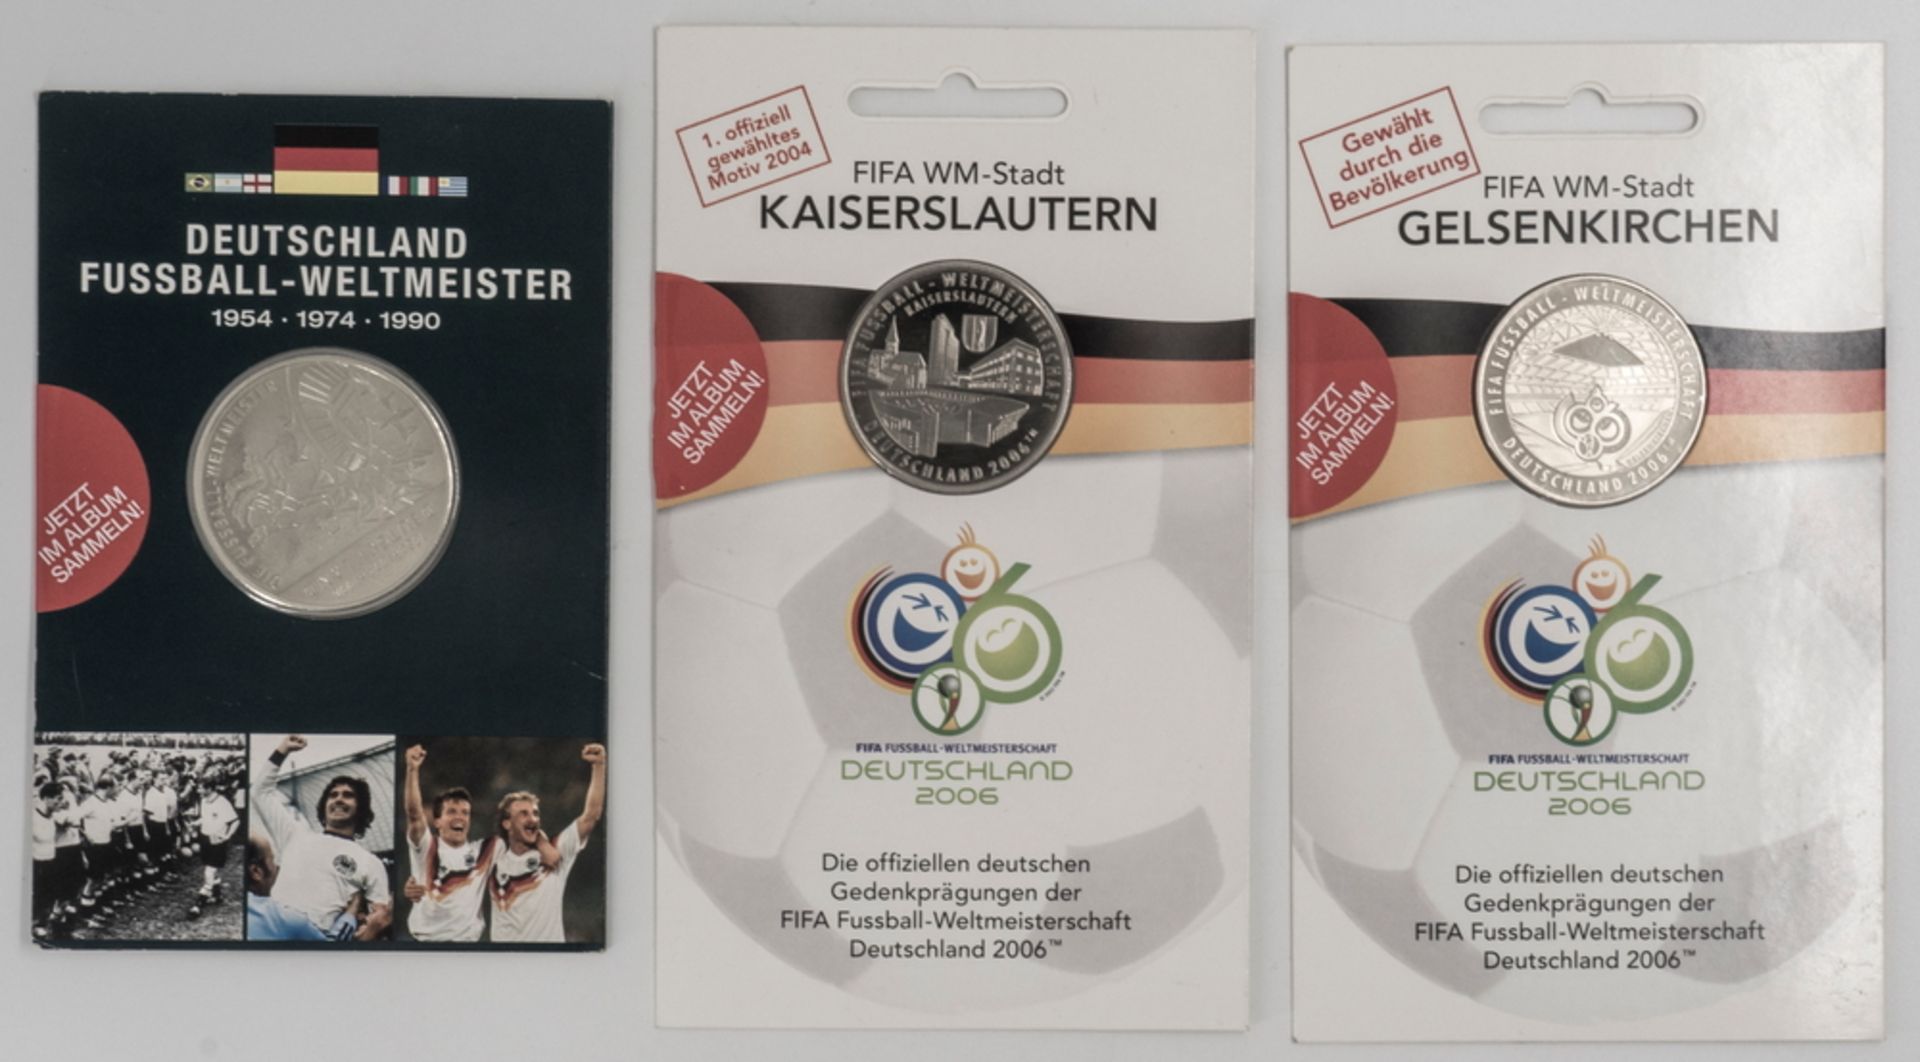 Lot offizielle Gedenkprägungen der FIFA Fußball - Weltmeisterschaft 2006 in Deutschland.